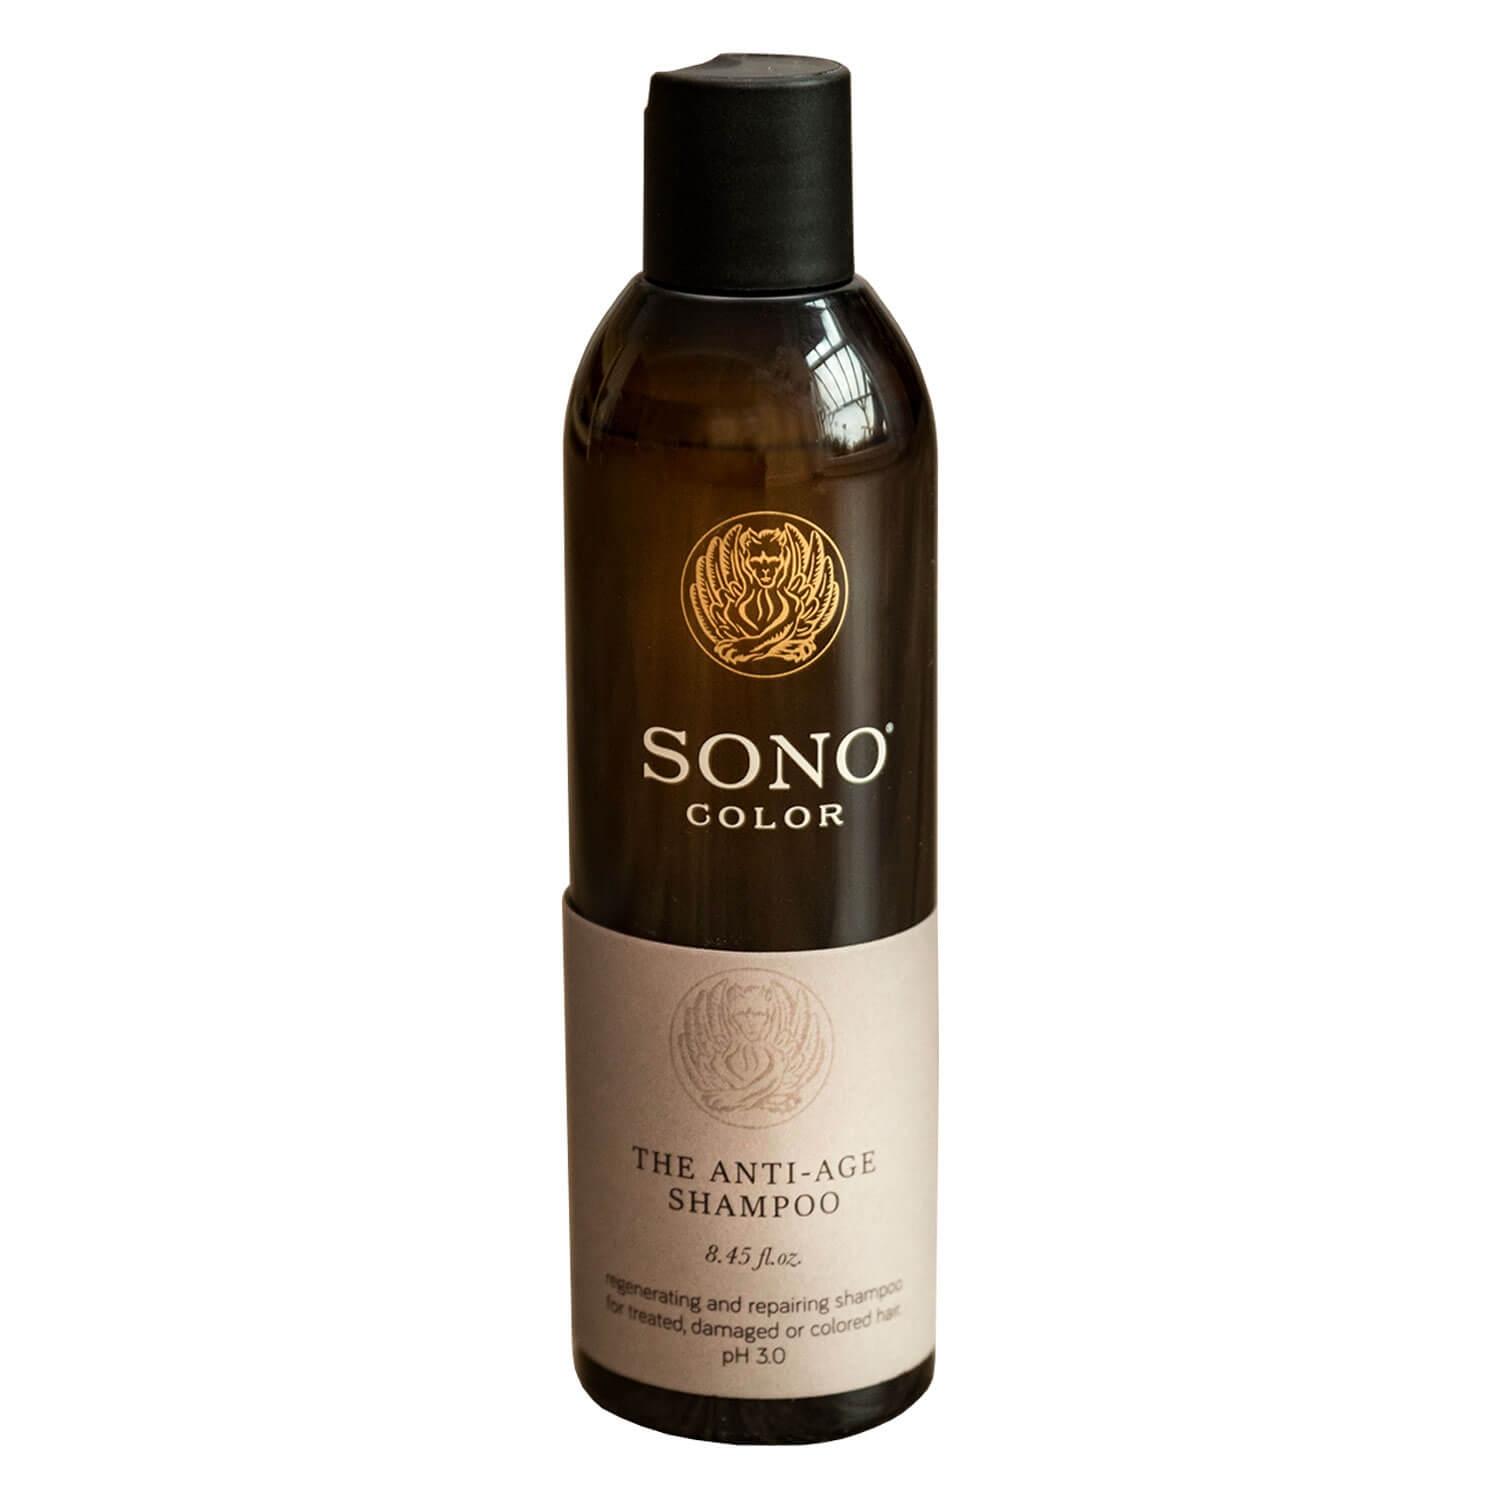 Produktbild von SONO Color - The Anti-Age Shampoo